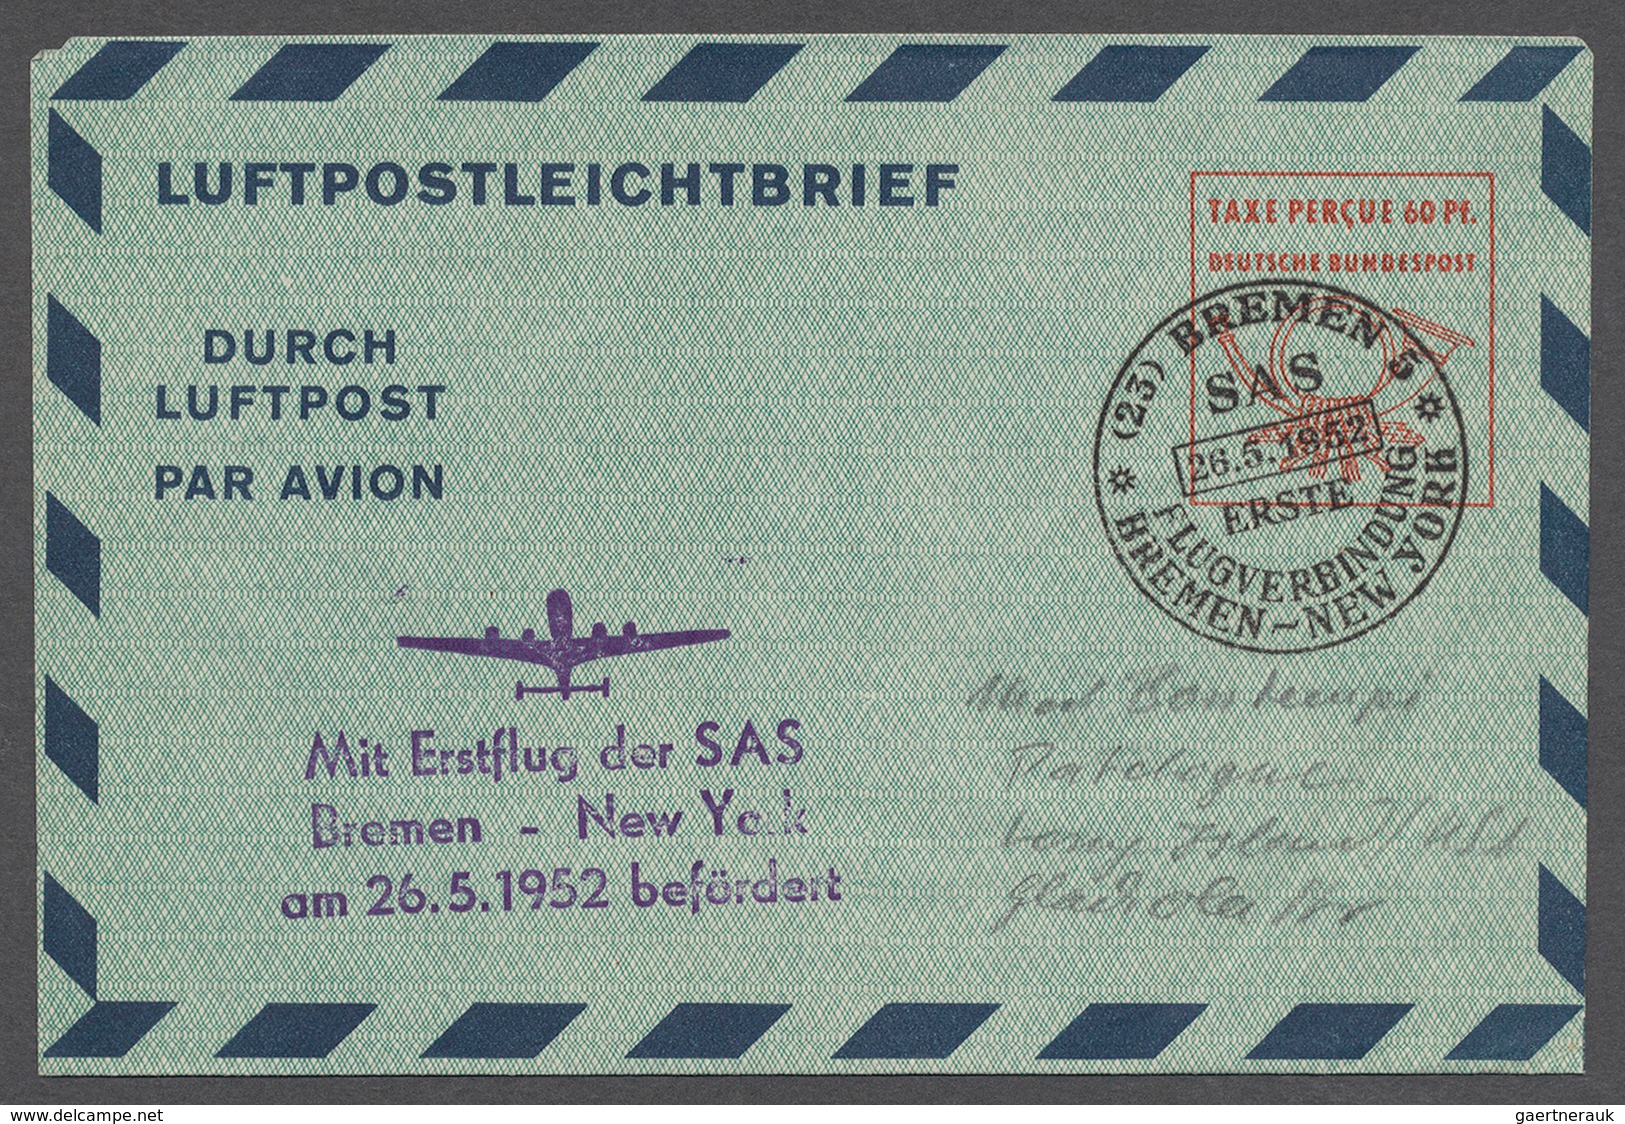 32731 Bundesrepublik Deutschland: 1950/97, interessanter Posten mit 233 Ganzsachen, darunter Spitzenstücke